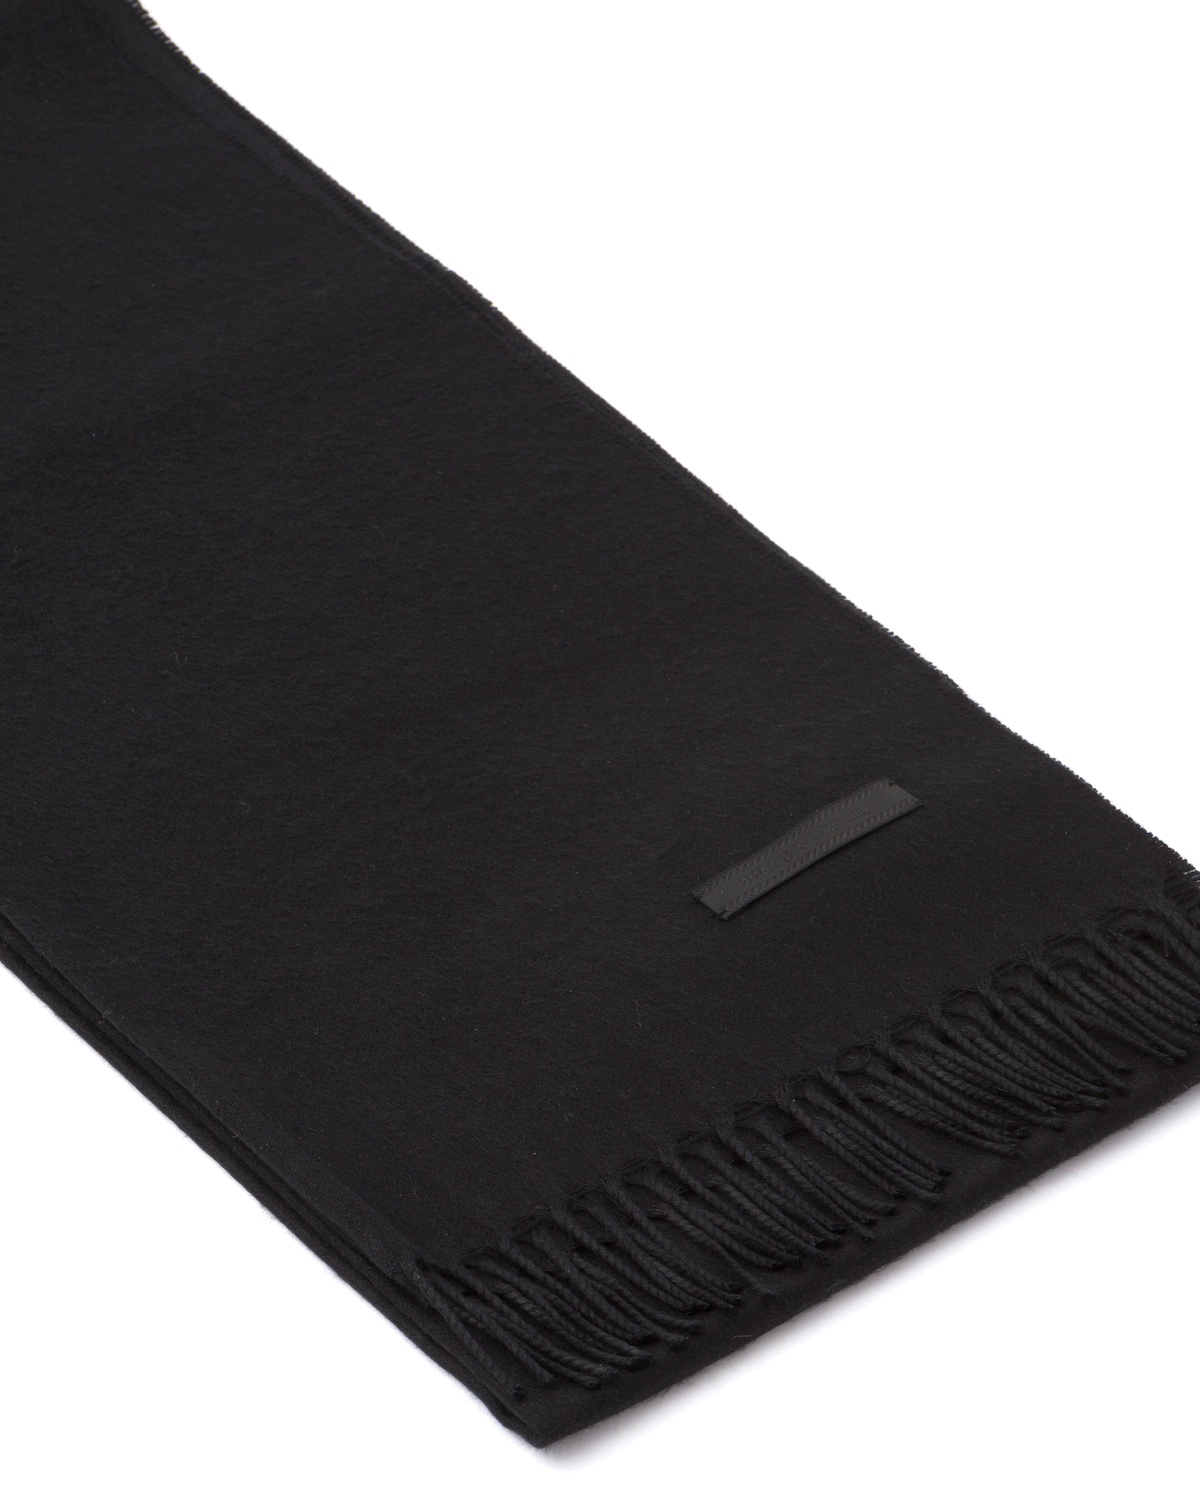 Tuxedo velour scarf - 4